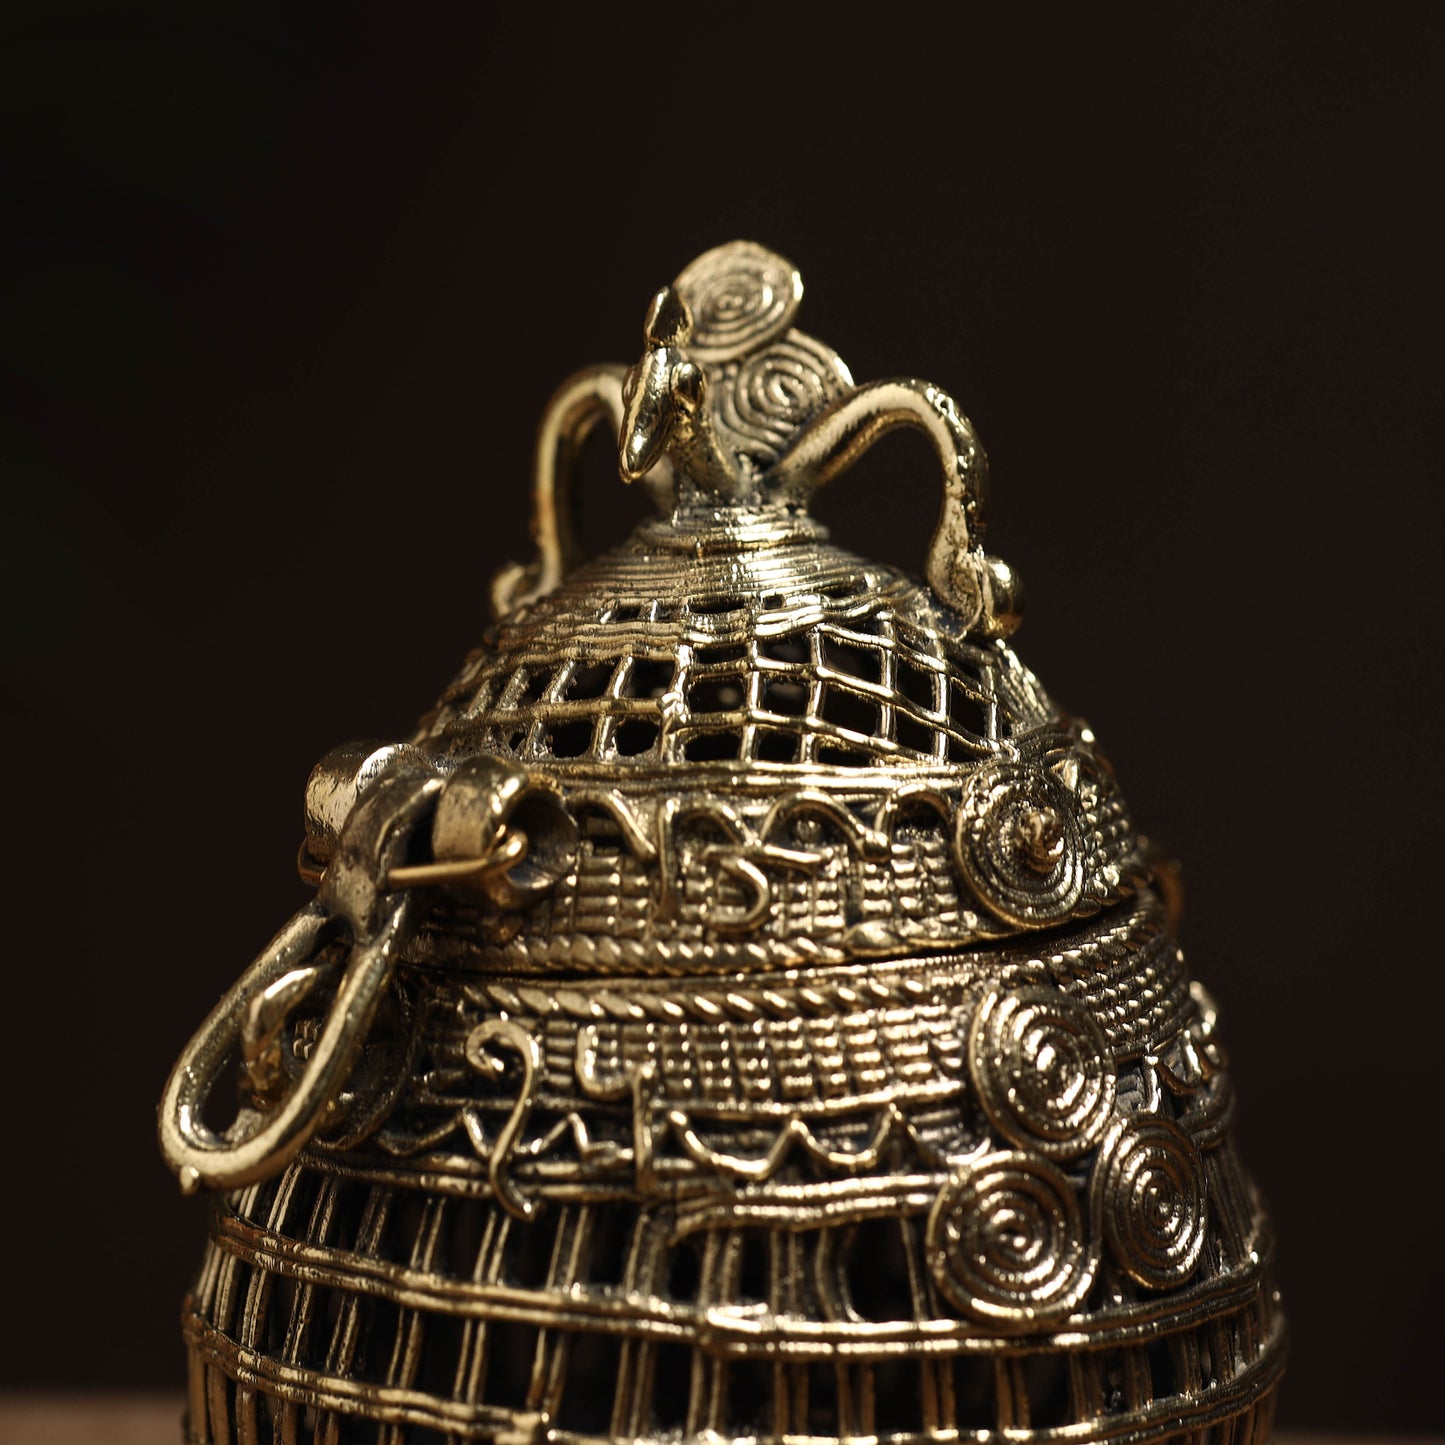 Tribal Odisha Dokra Handmade Coconut Jewelery Box